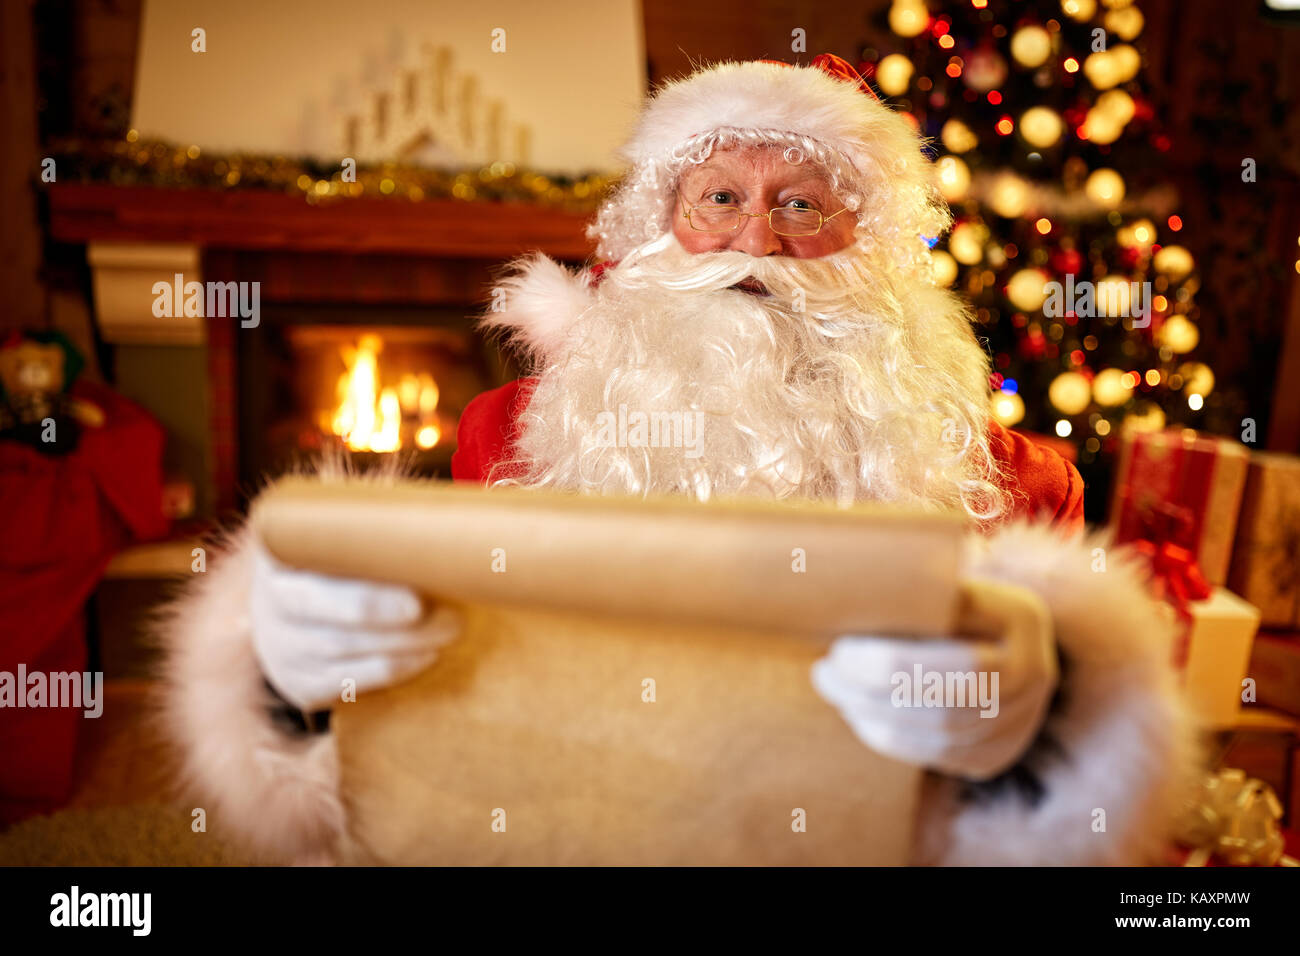 Babbo Natale con un elenco dei bambini auguri per i regali di natale Foto Stock